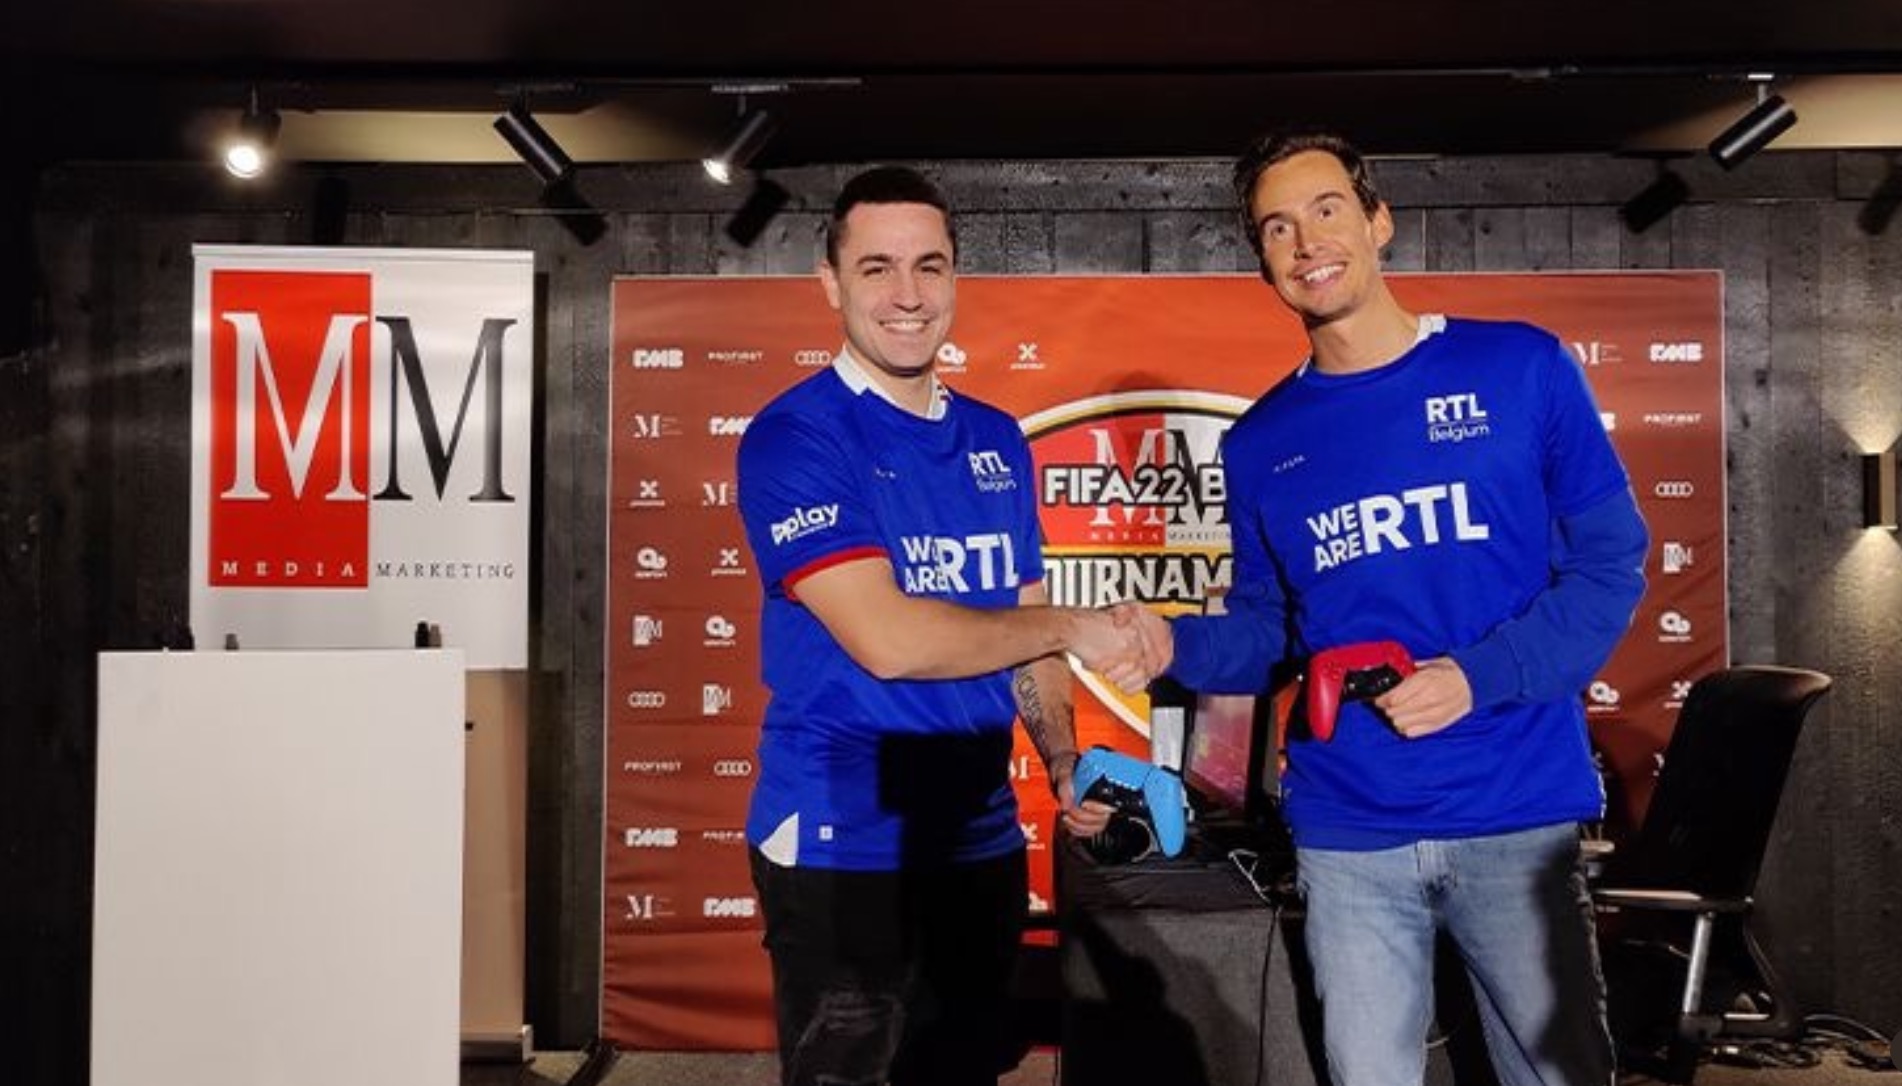 We Are RTL remporte l'édition 2022 du Tournoi FIFA B2B